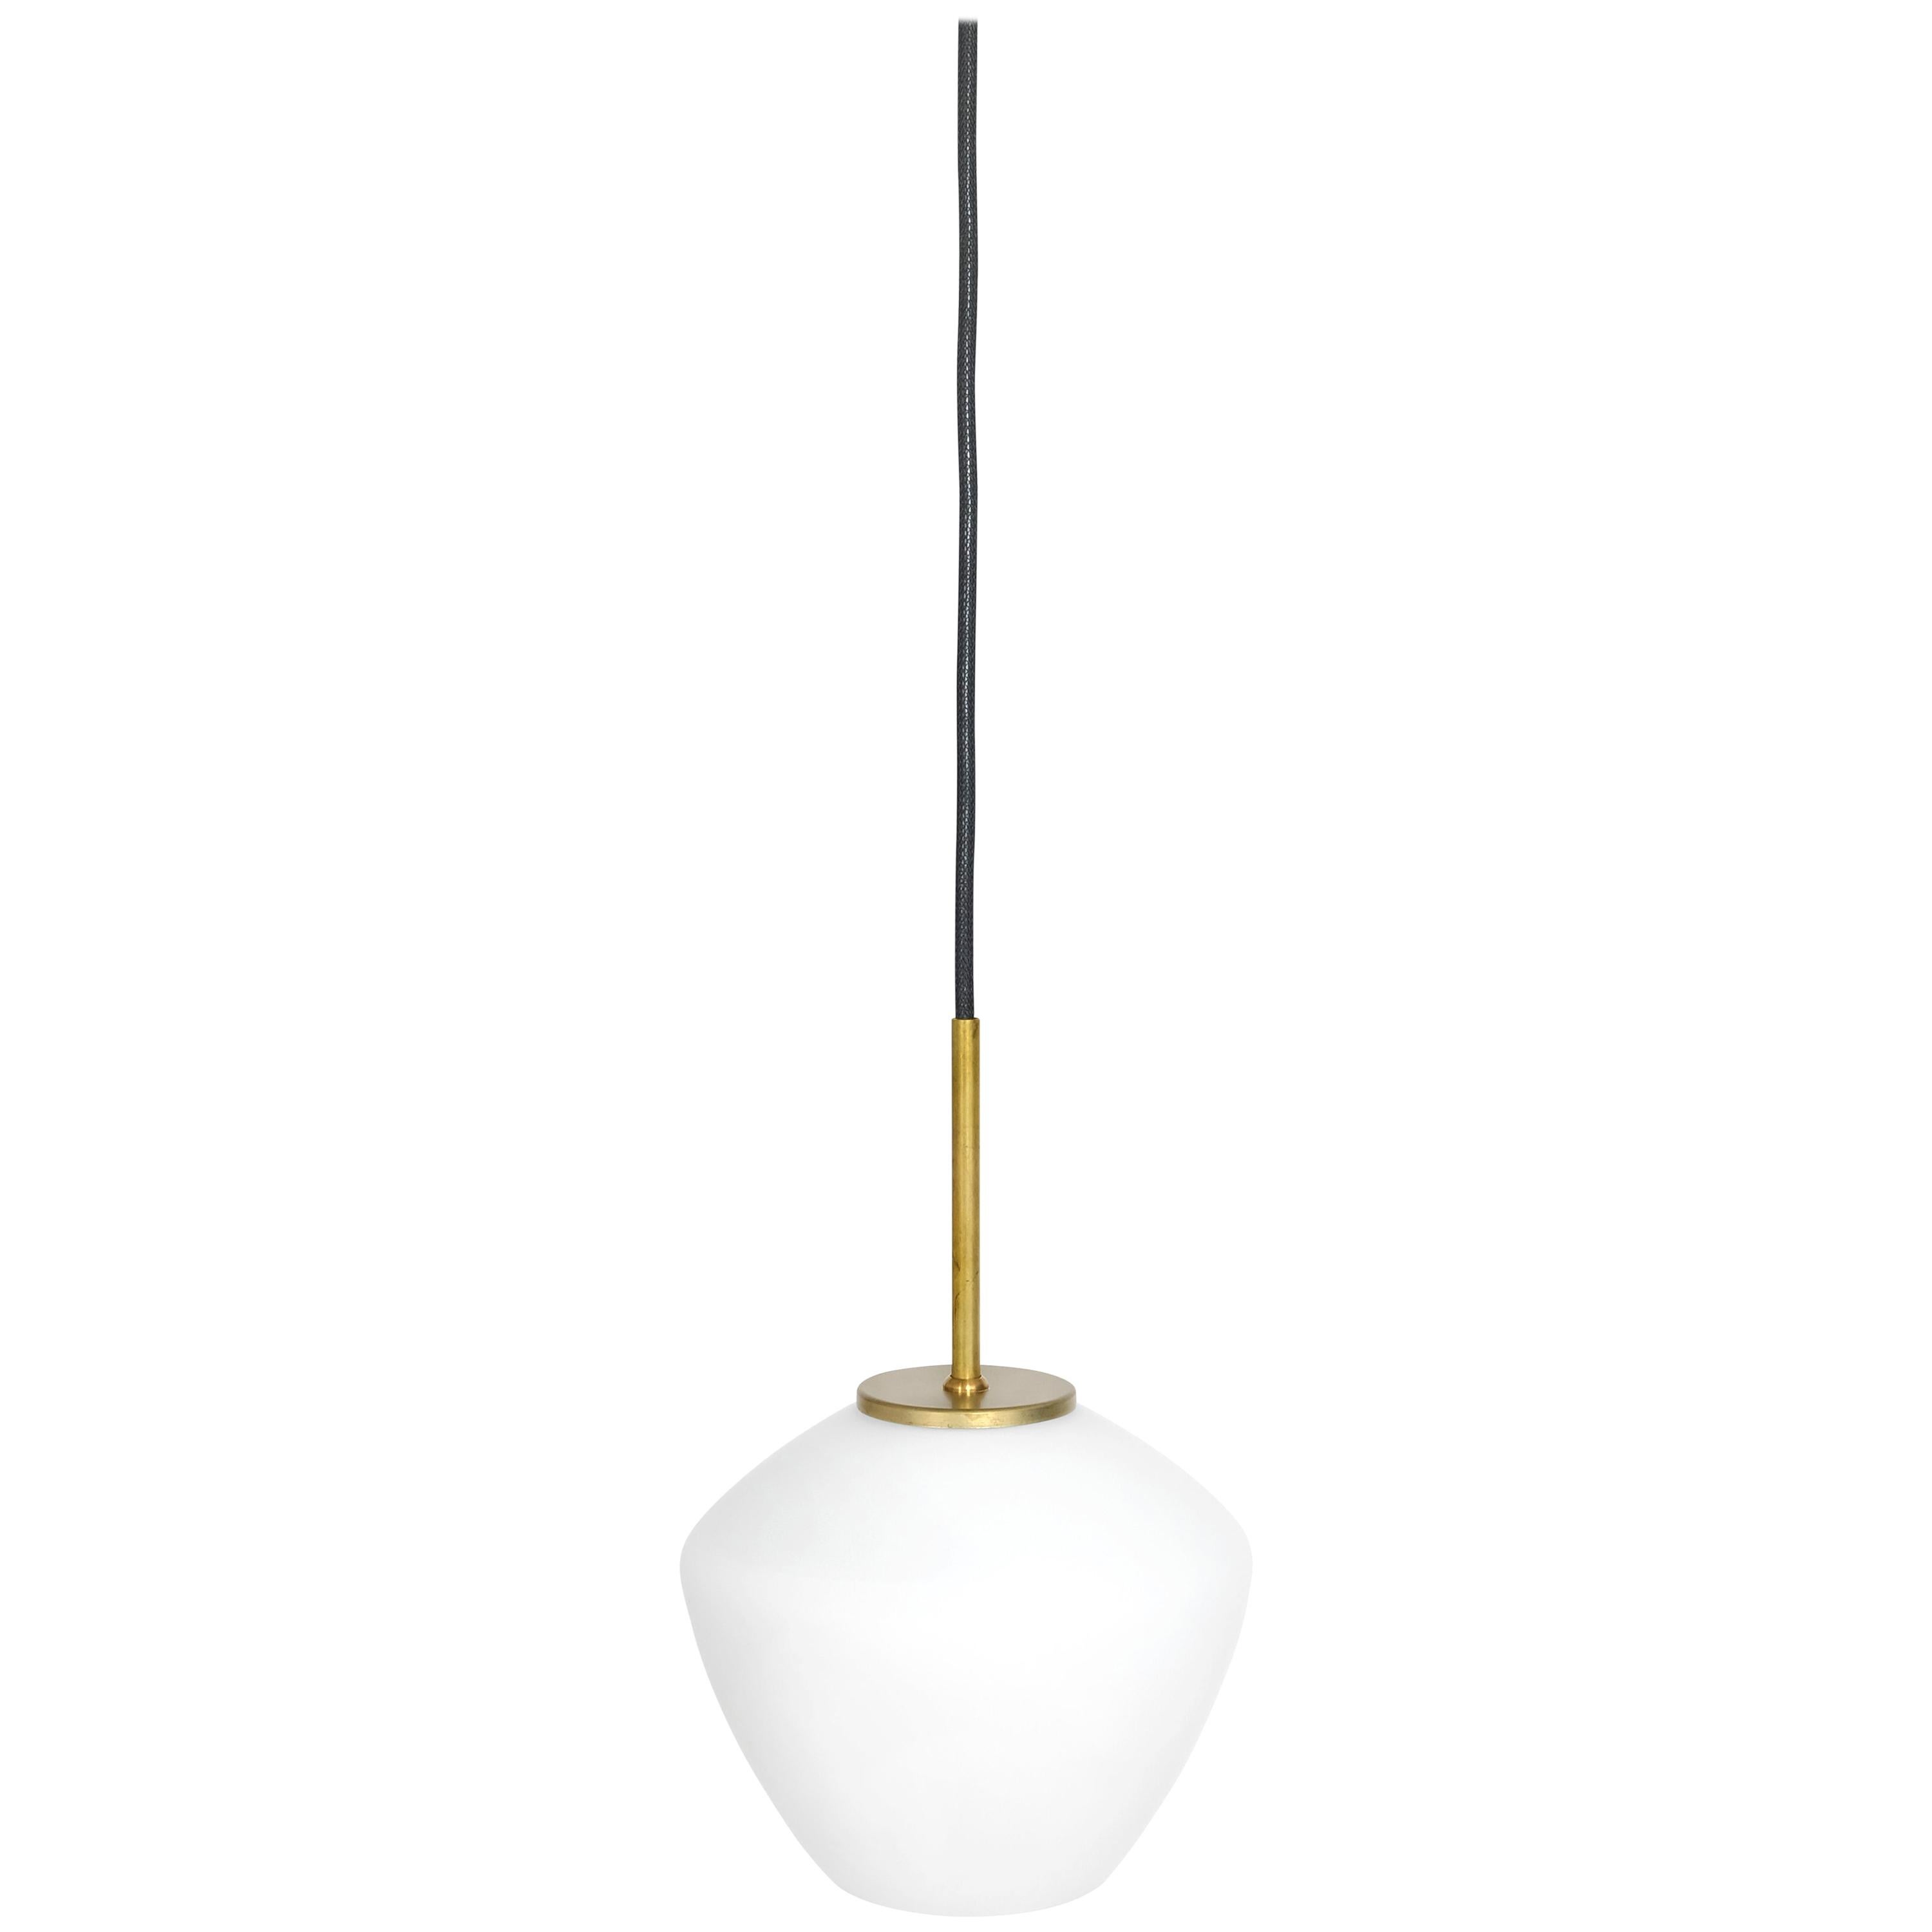 Henrik Tengler DK 1 Ceiling Lamp by Konsthantverk For Sale